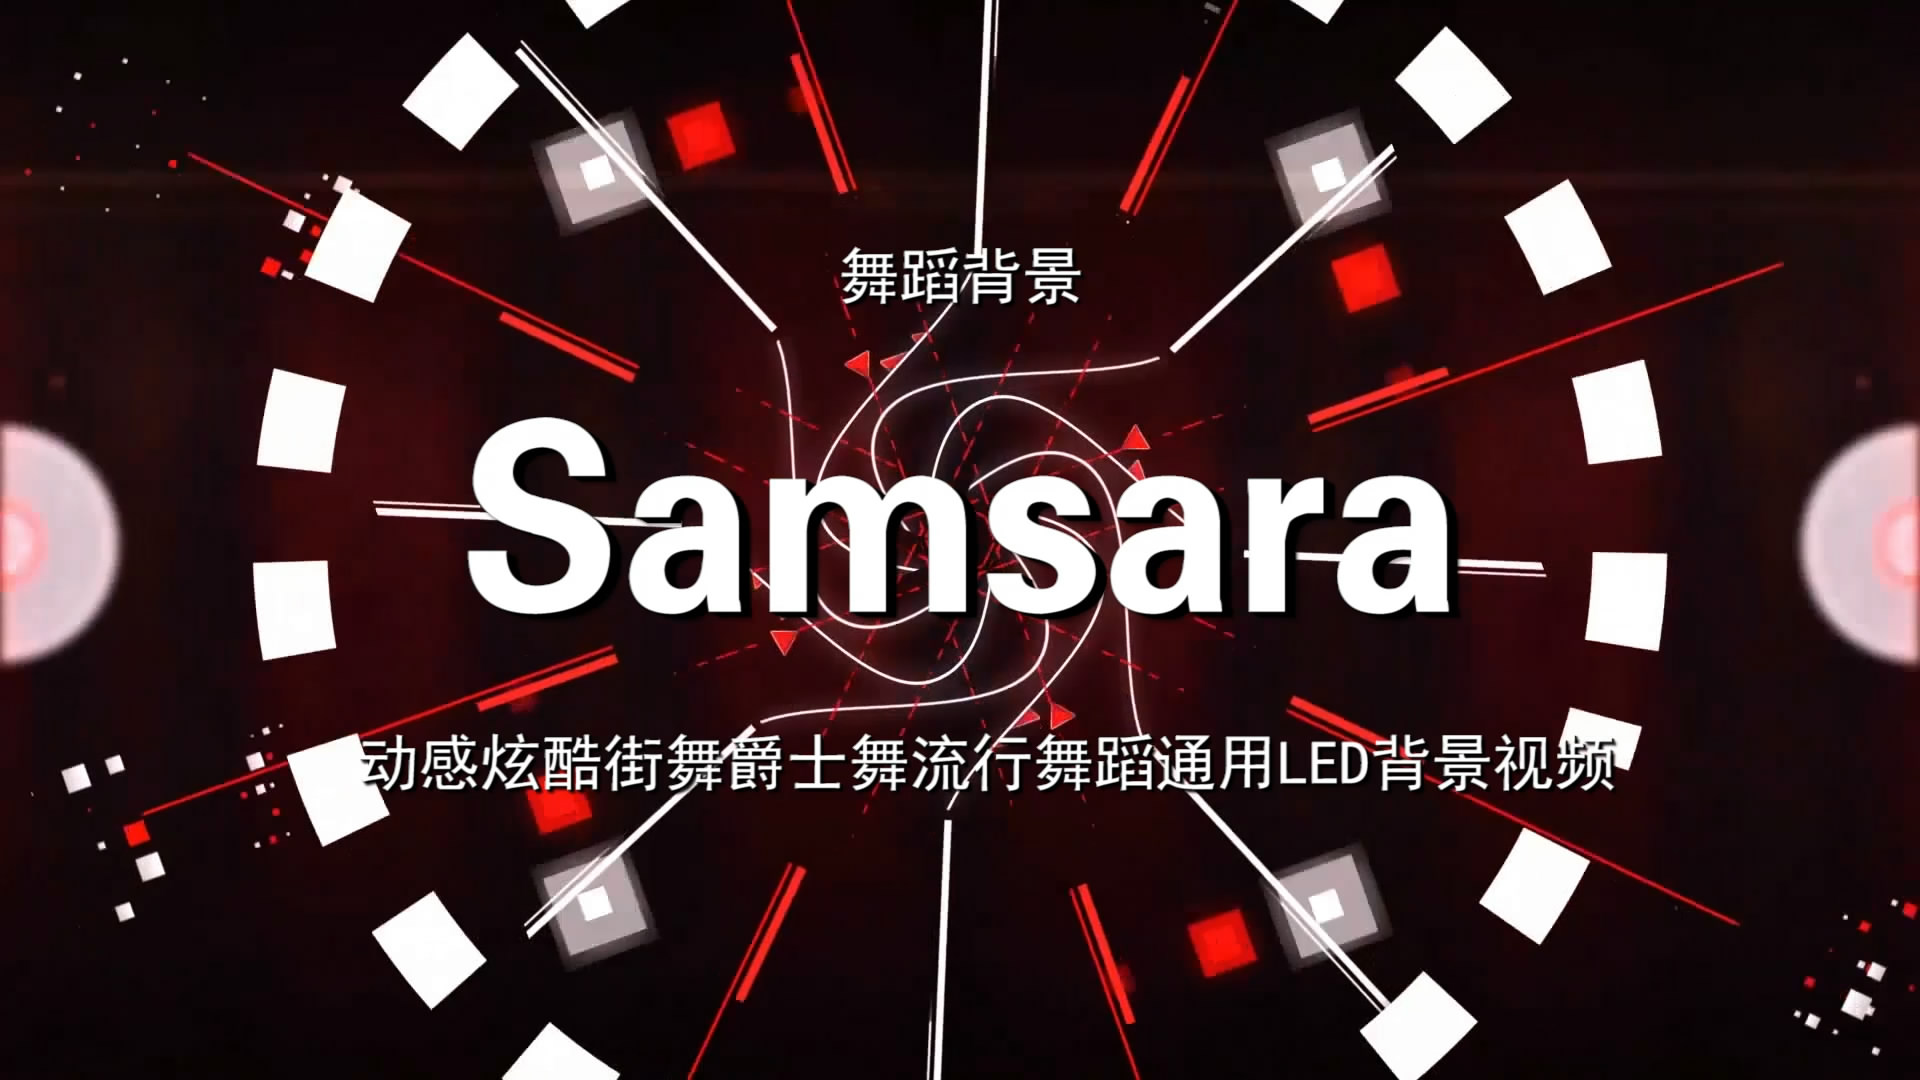 Samsara 动感炫酷街舞流行歌